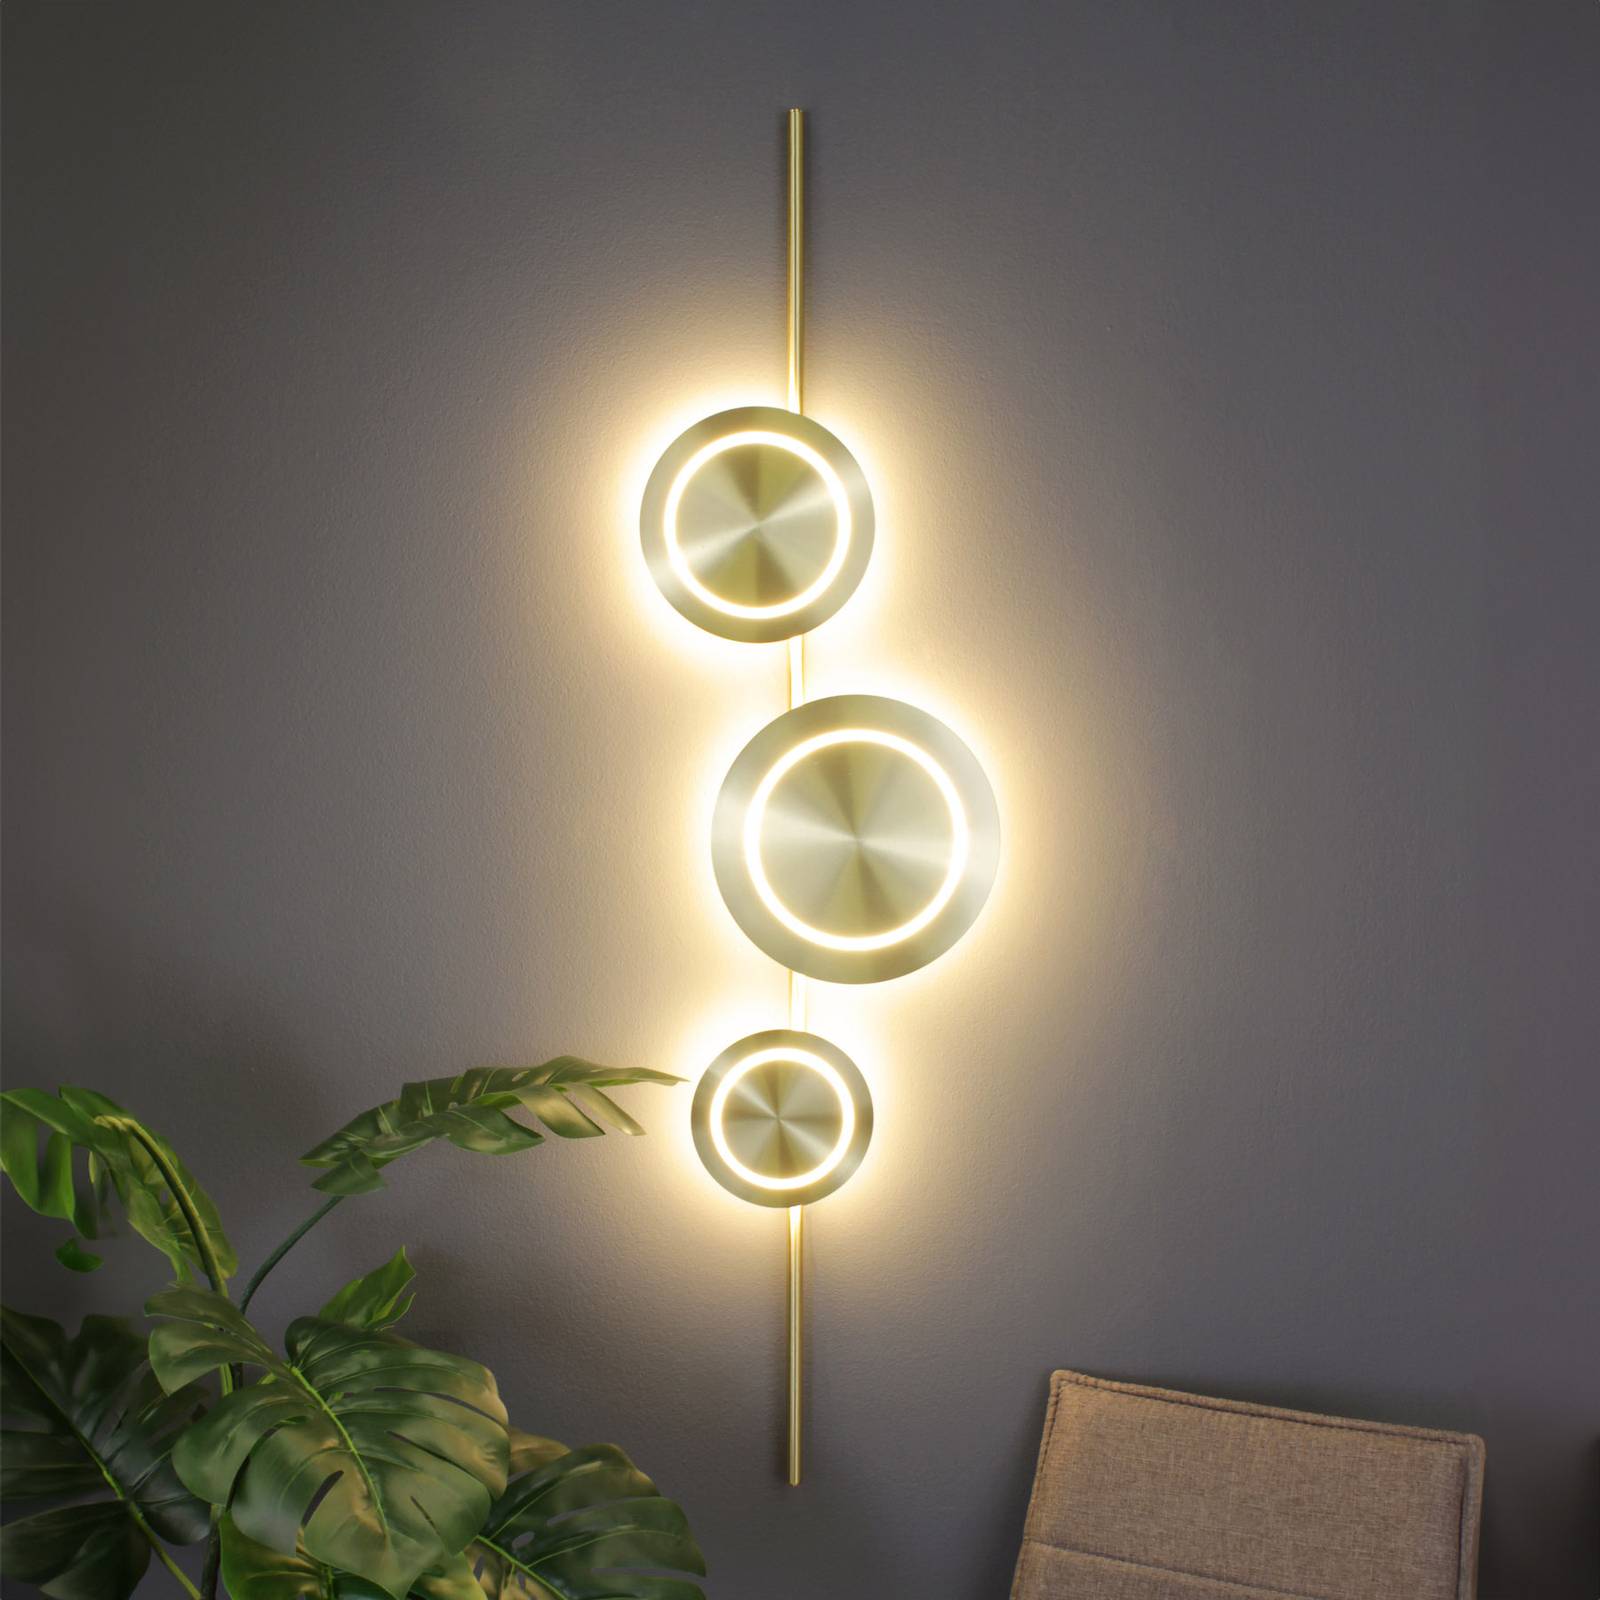 Eco-light led fali lámpa planetárium, arany színű, magasság 120 cm, 3 lámpás.